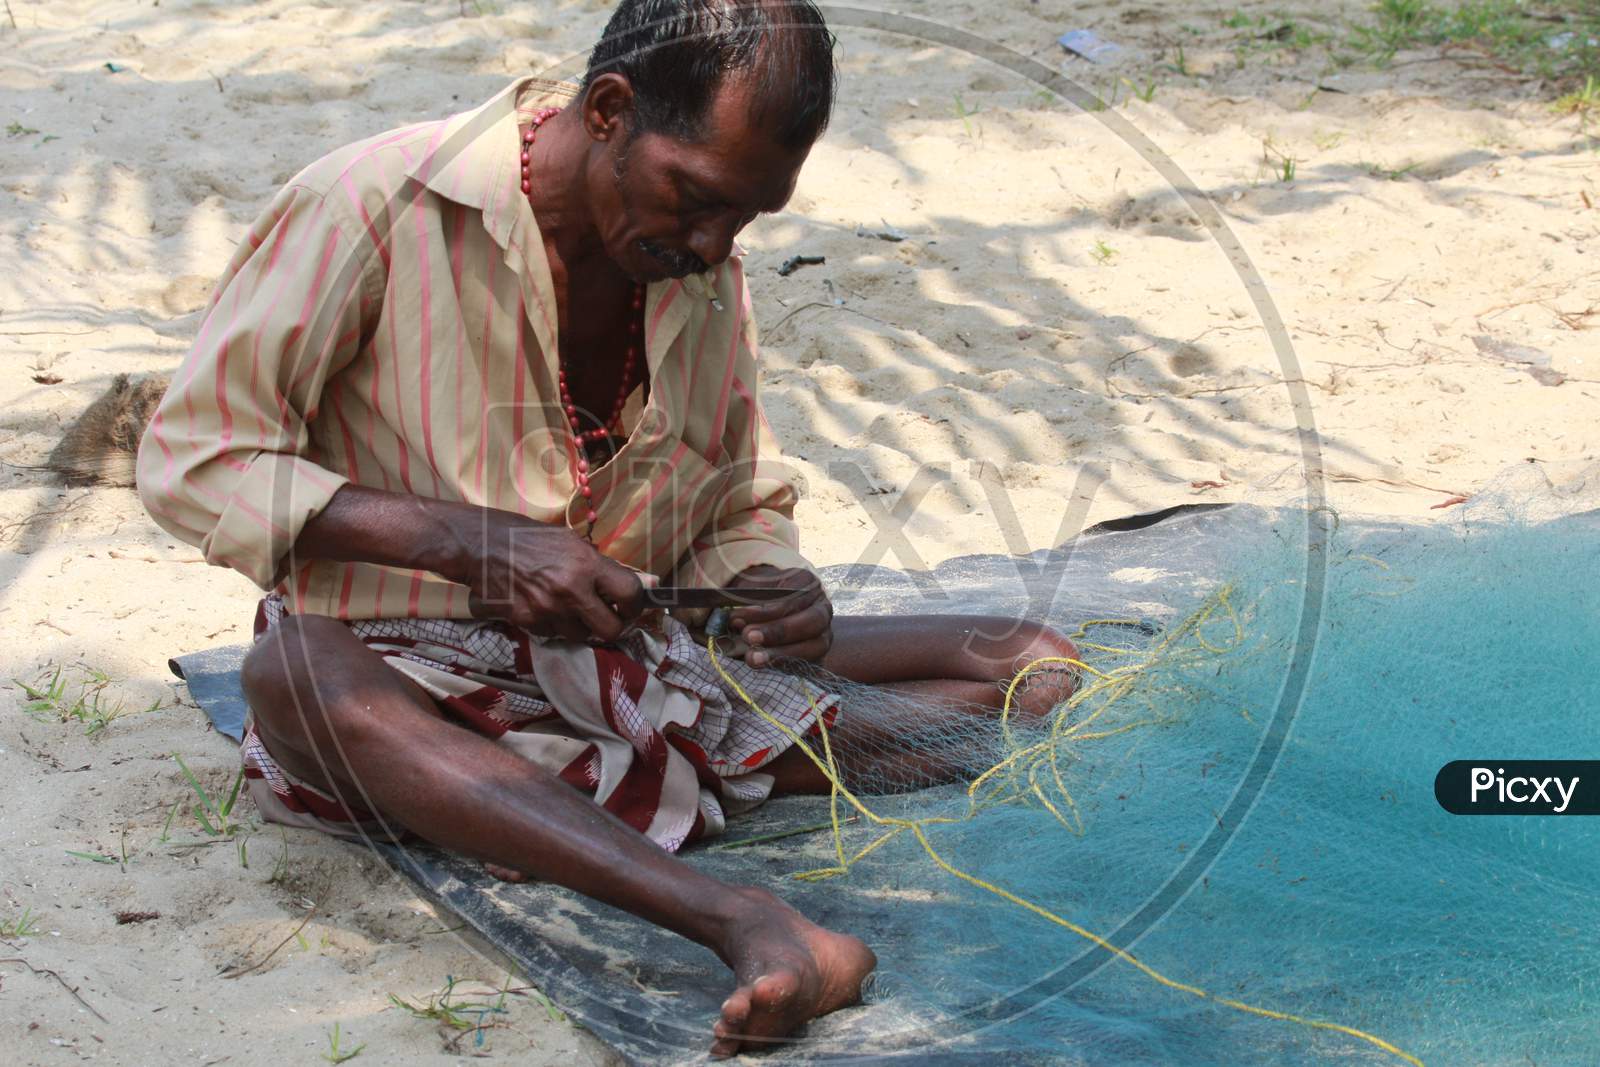 Fisherman stitching the Fishing Net